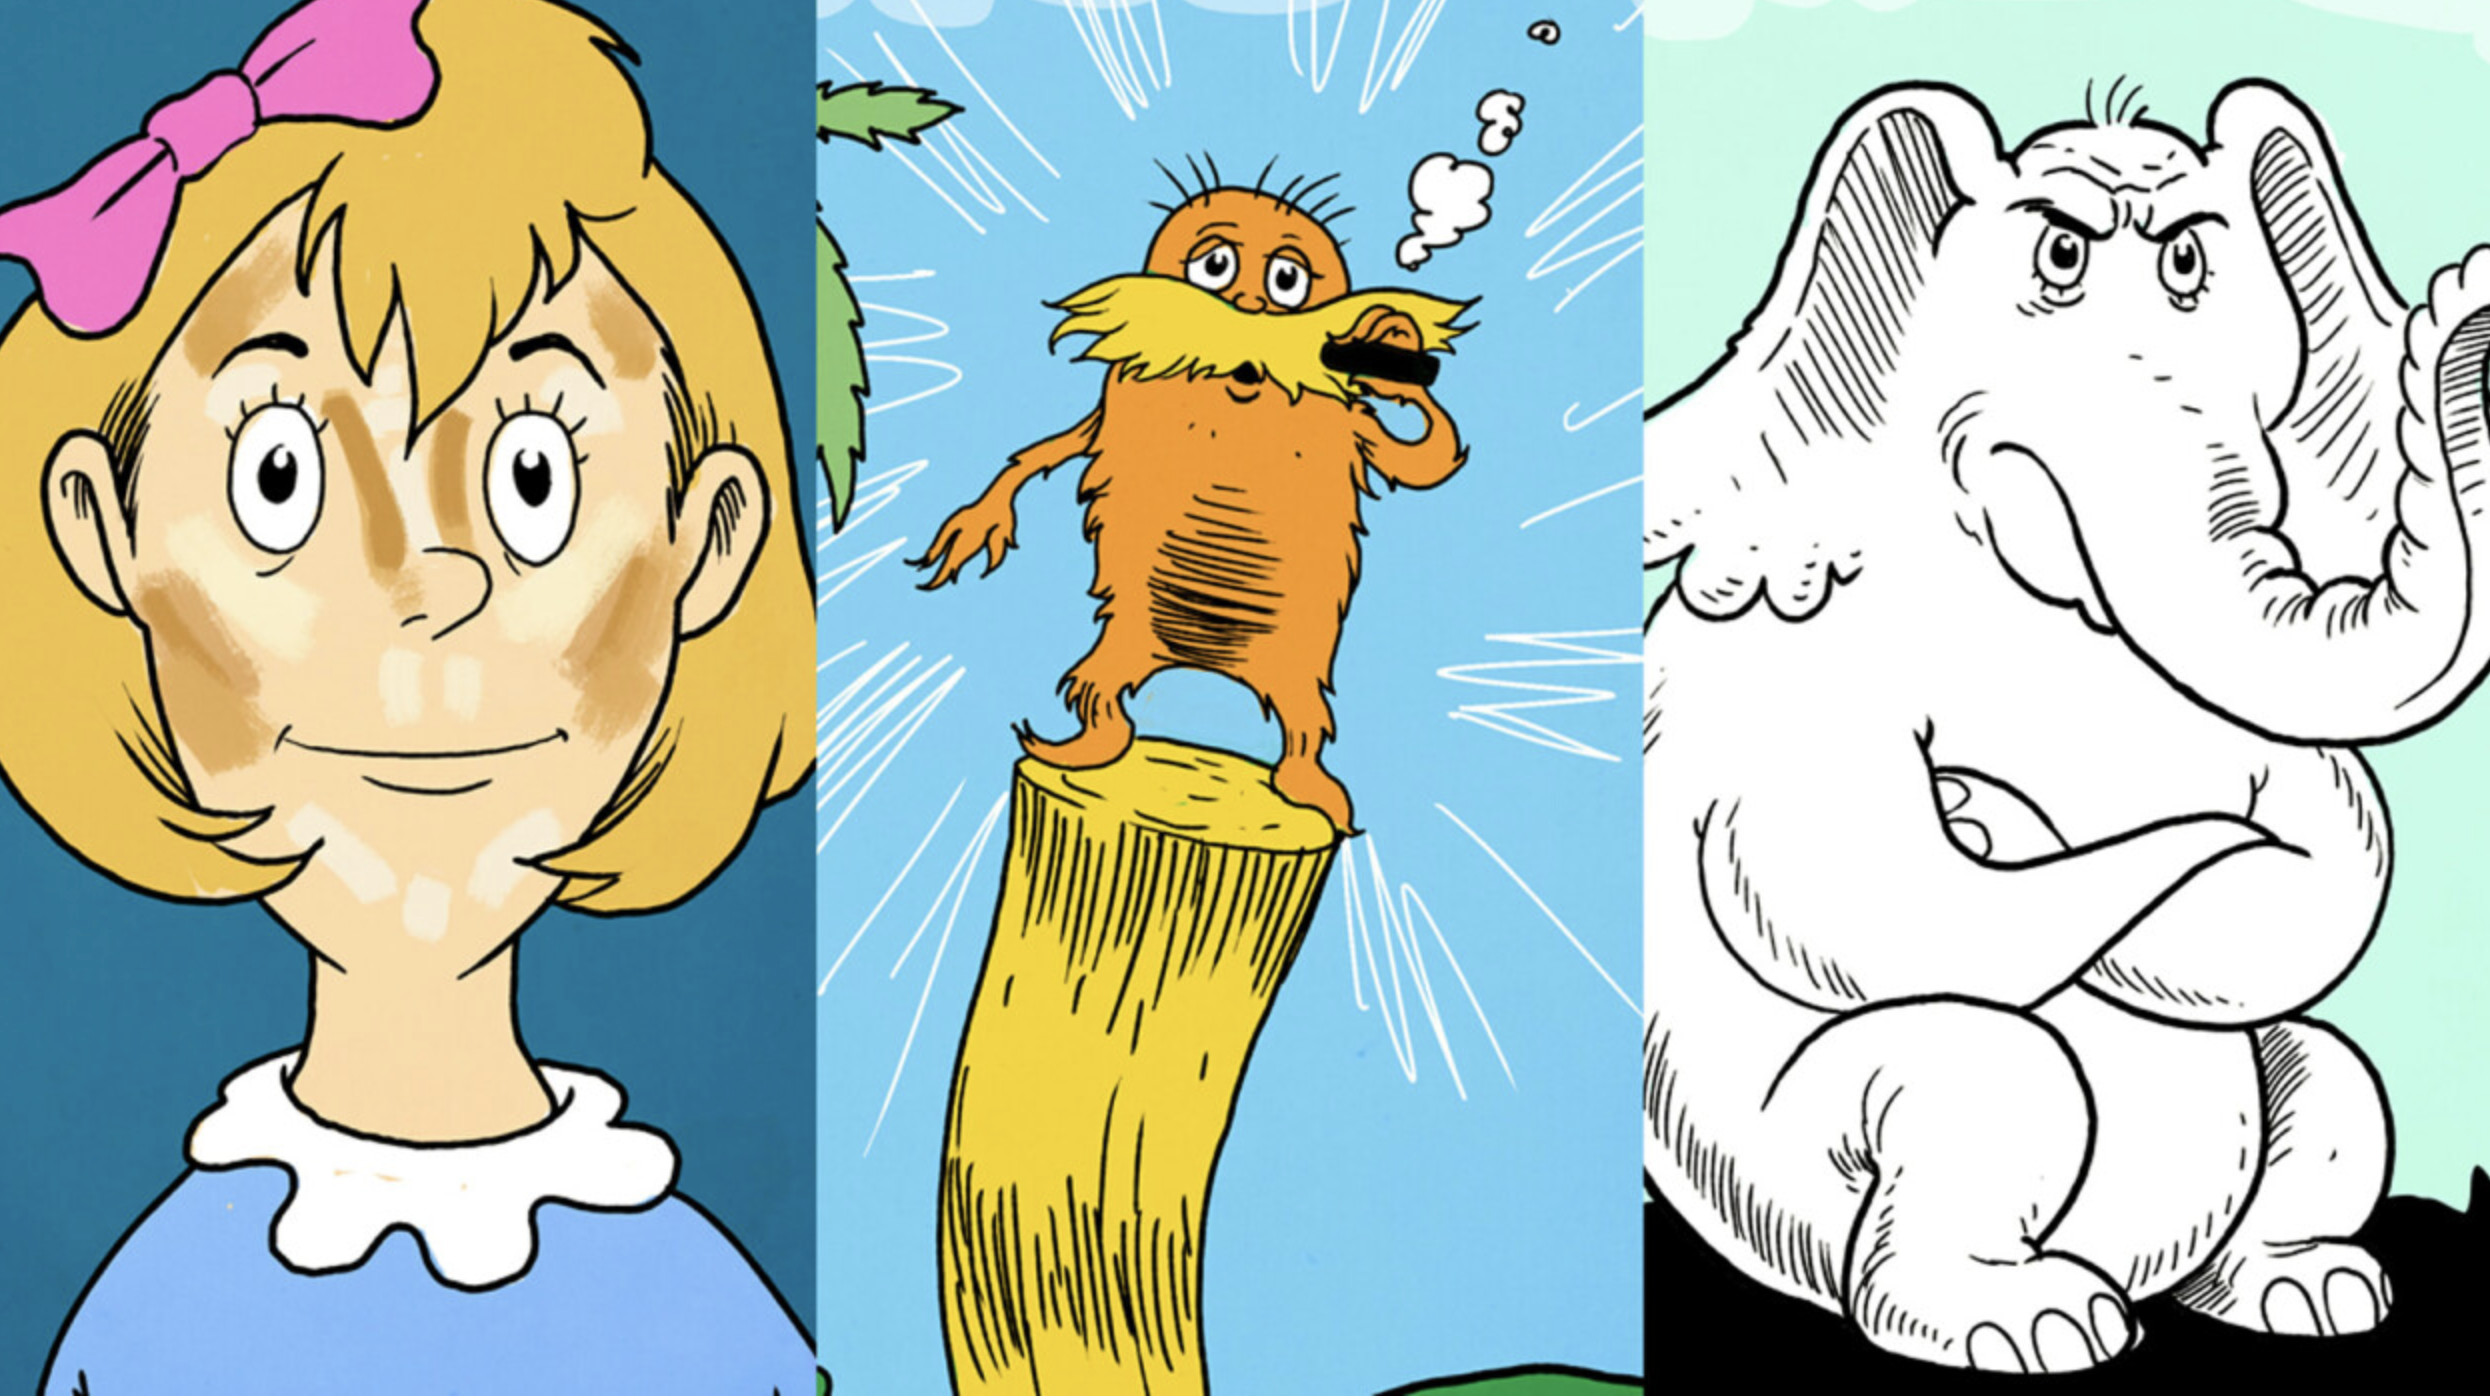 10 Dr. Seuss books for millennials